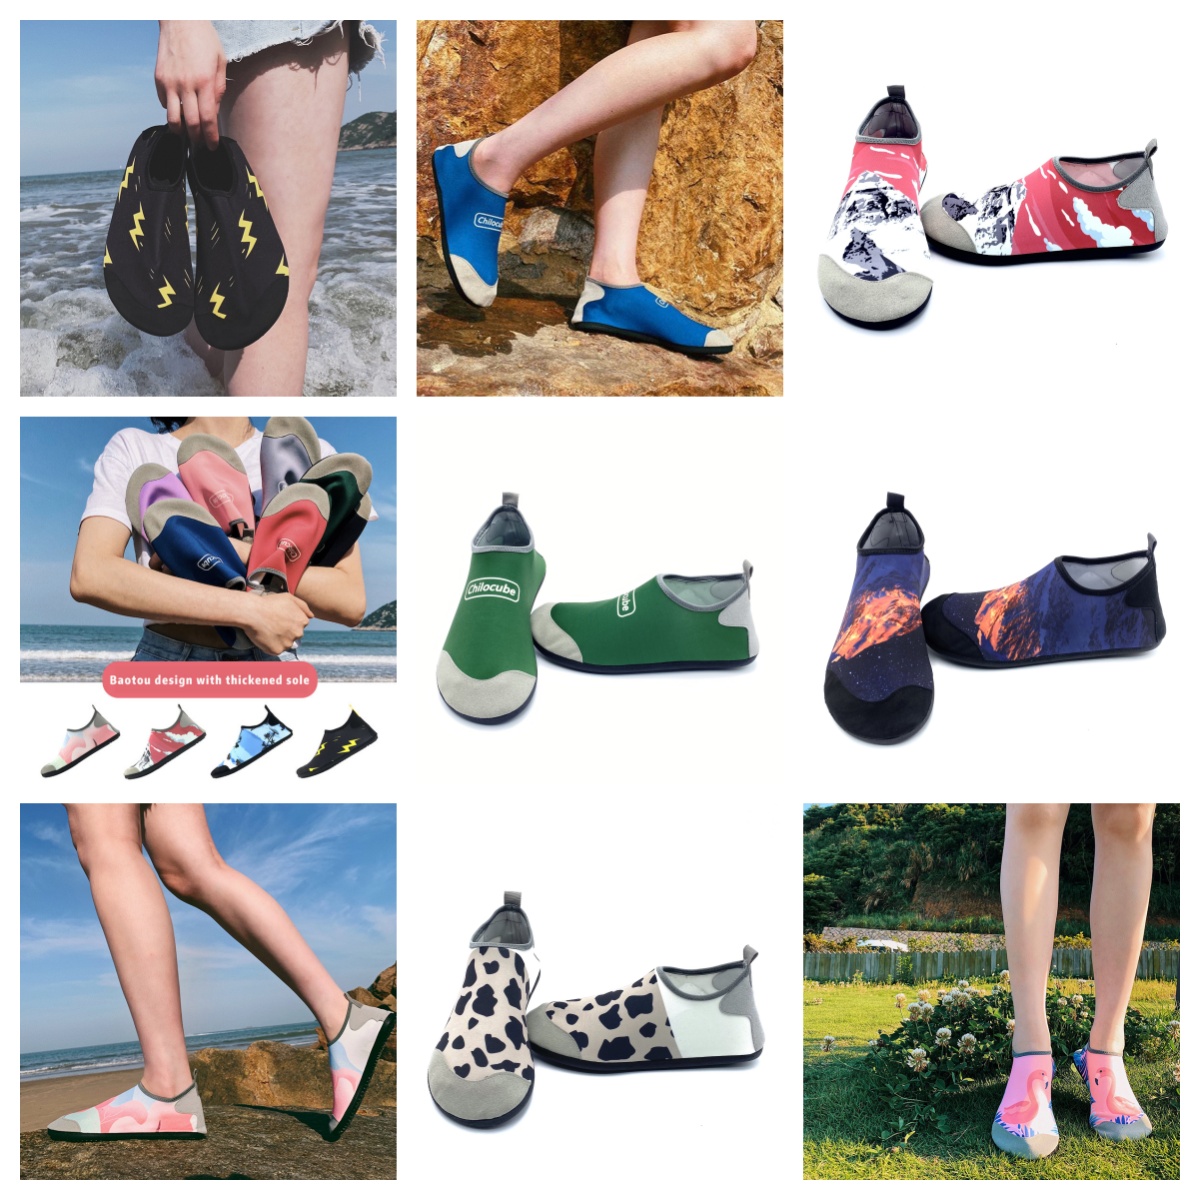 Scarpe atletiche gai sandalo uomo donna che guasta scarpe a piedi nudi sport scarpe verdi spiagge di sandalo coppia di scarpe da scarpa da scarpa da 35-46 EUR